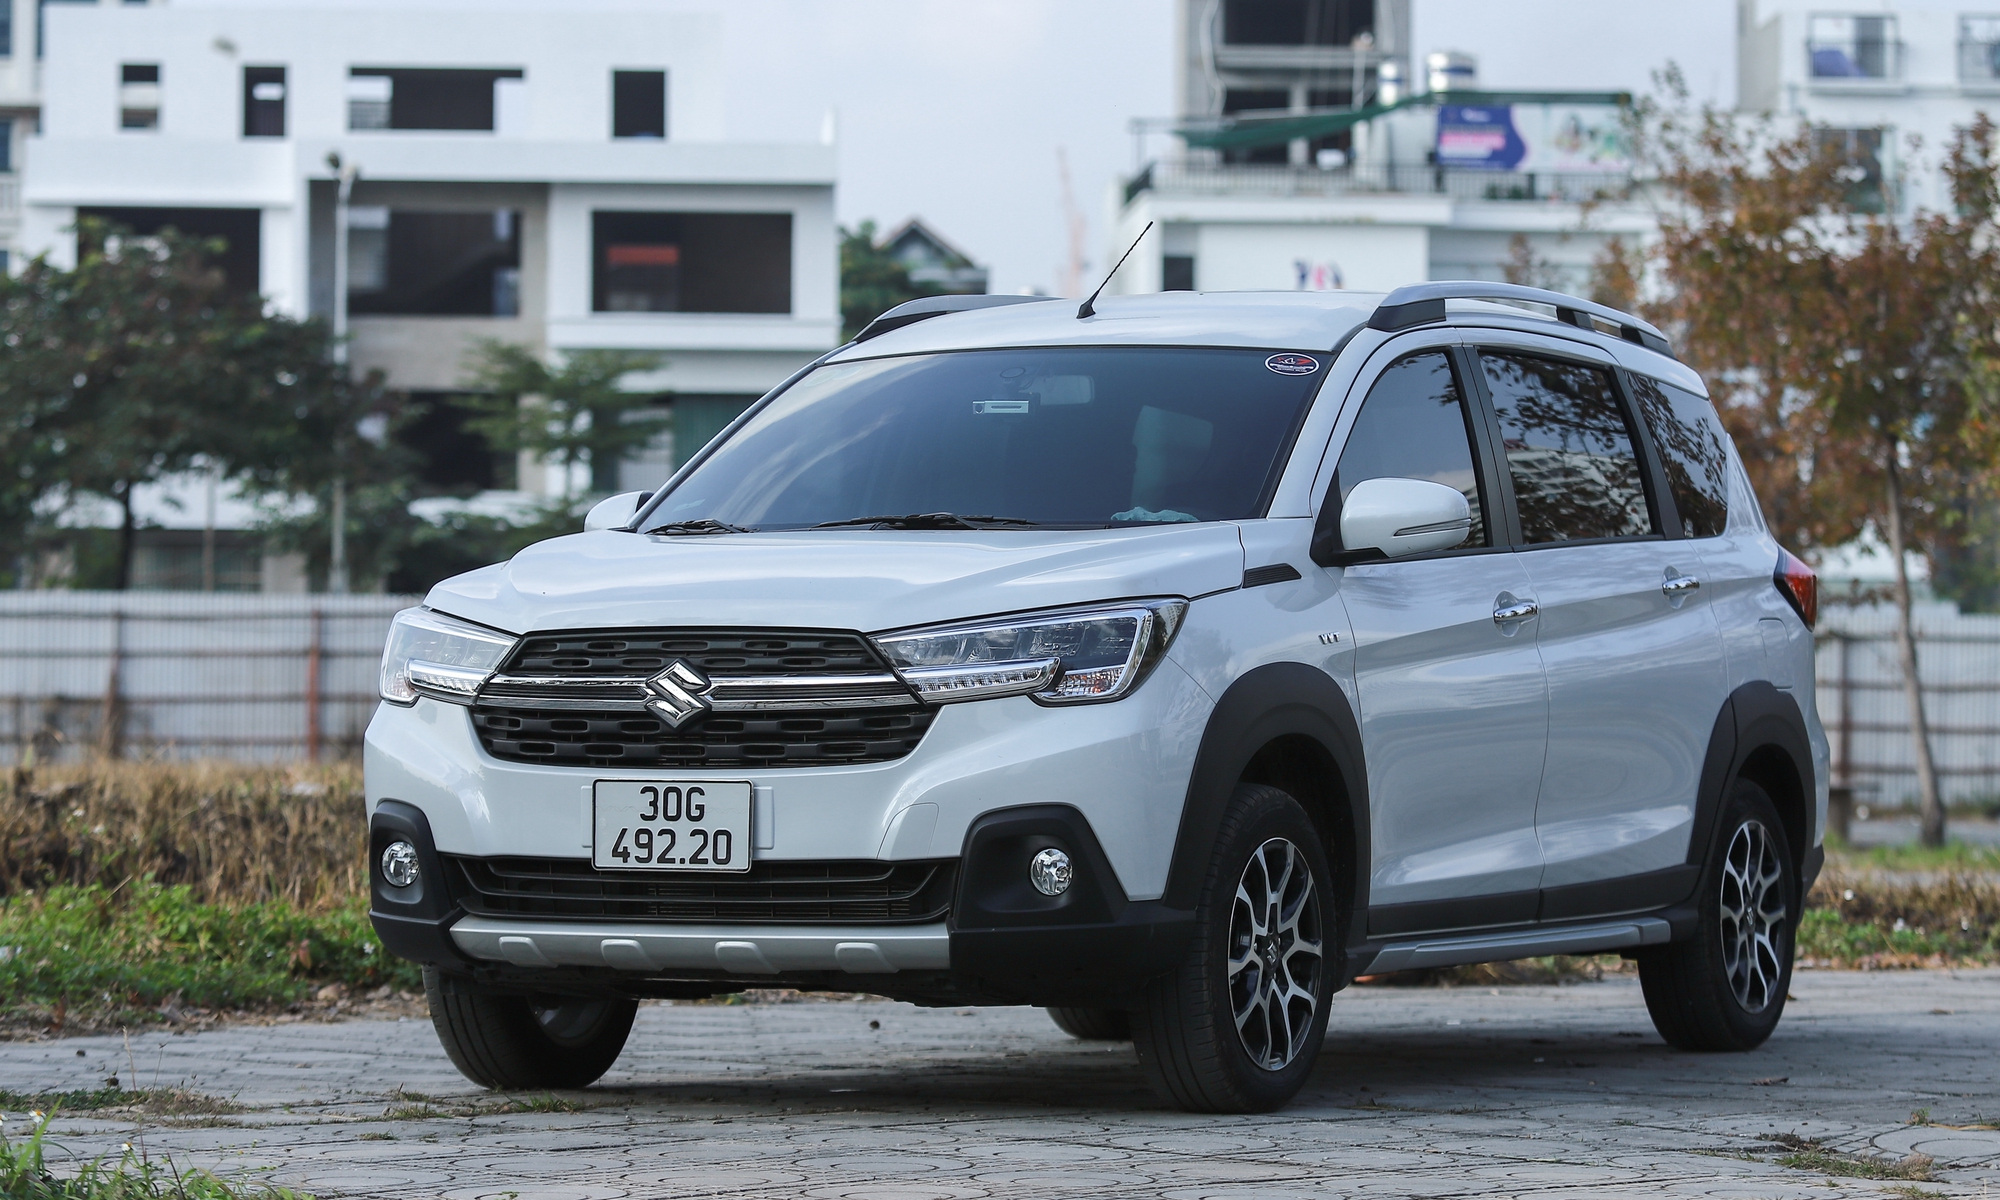 Top 10 ô tô bán chạy nhất Việt Nam tháng 6 xuất hiện nhiều biến số: Toyota Vios, Mitsubishi Xpander ‘mất tích’, lần đầu có một mẫu ô tô điện góp mặt - Ảnh 2.